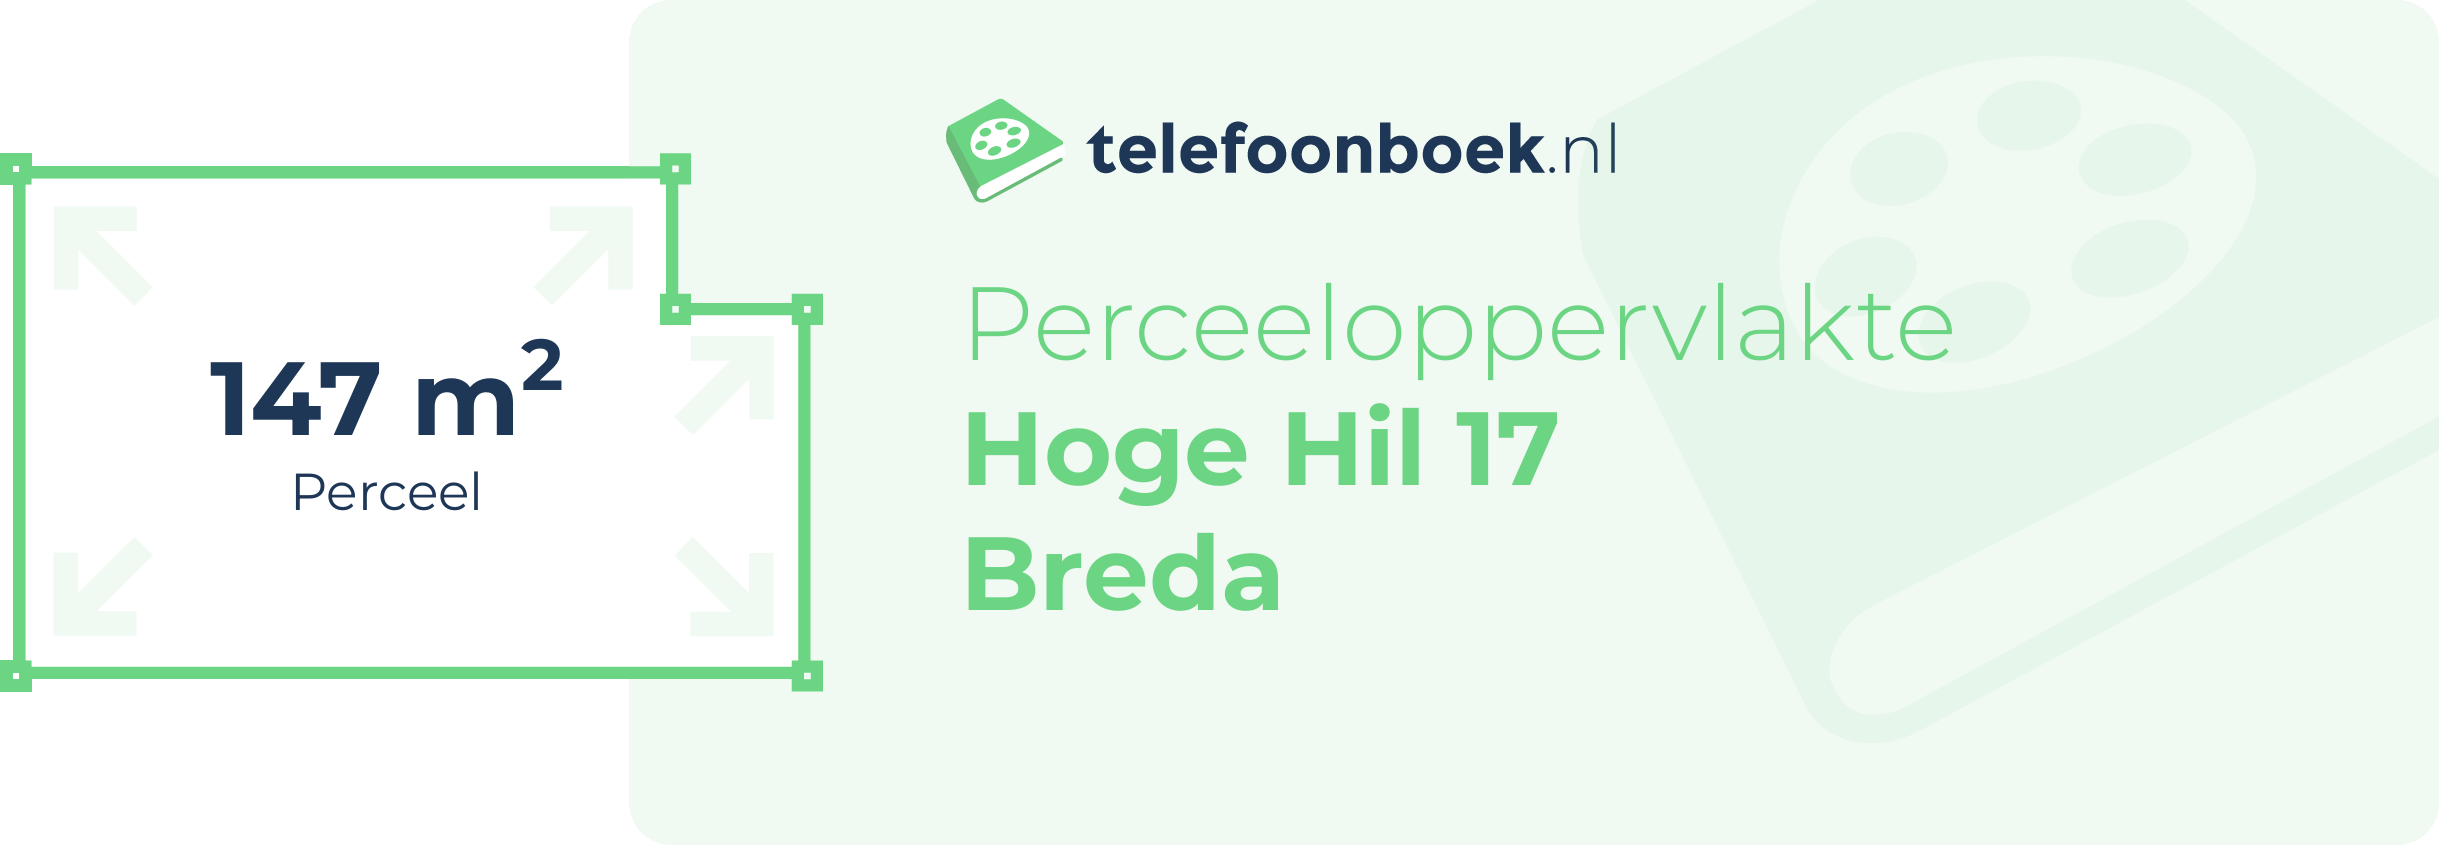 Perceeloppervlakte Hoge Hil 17 Breda